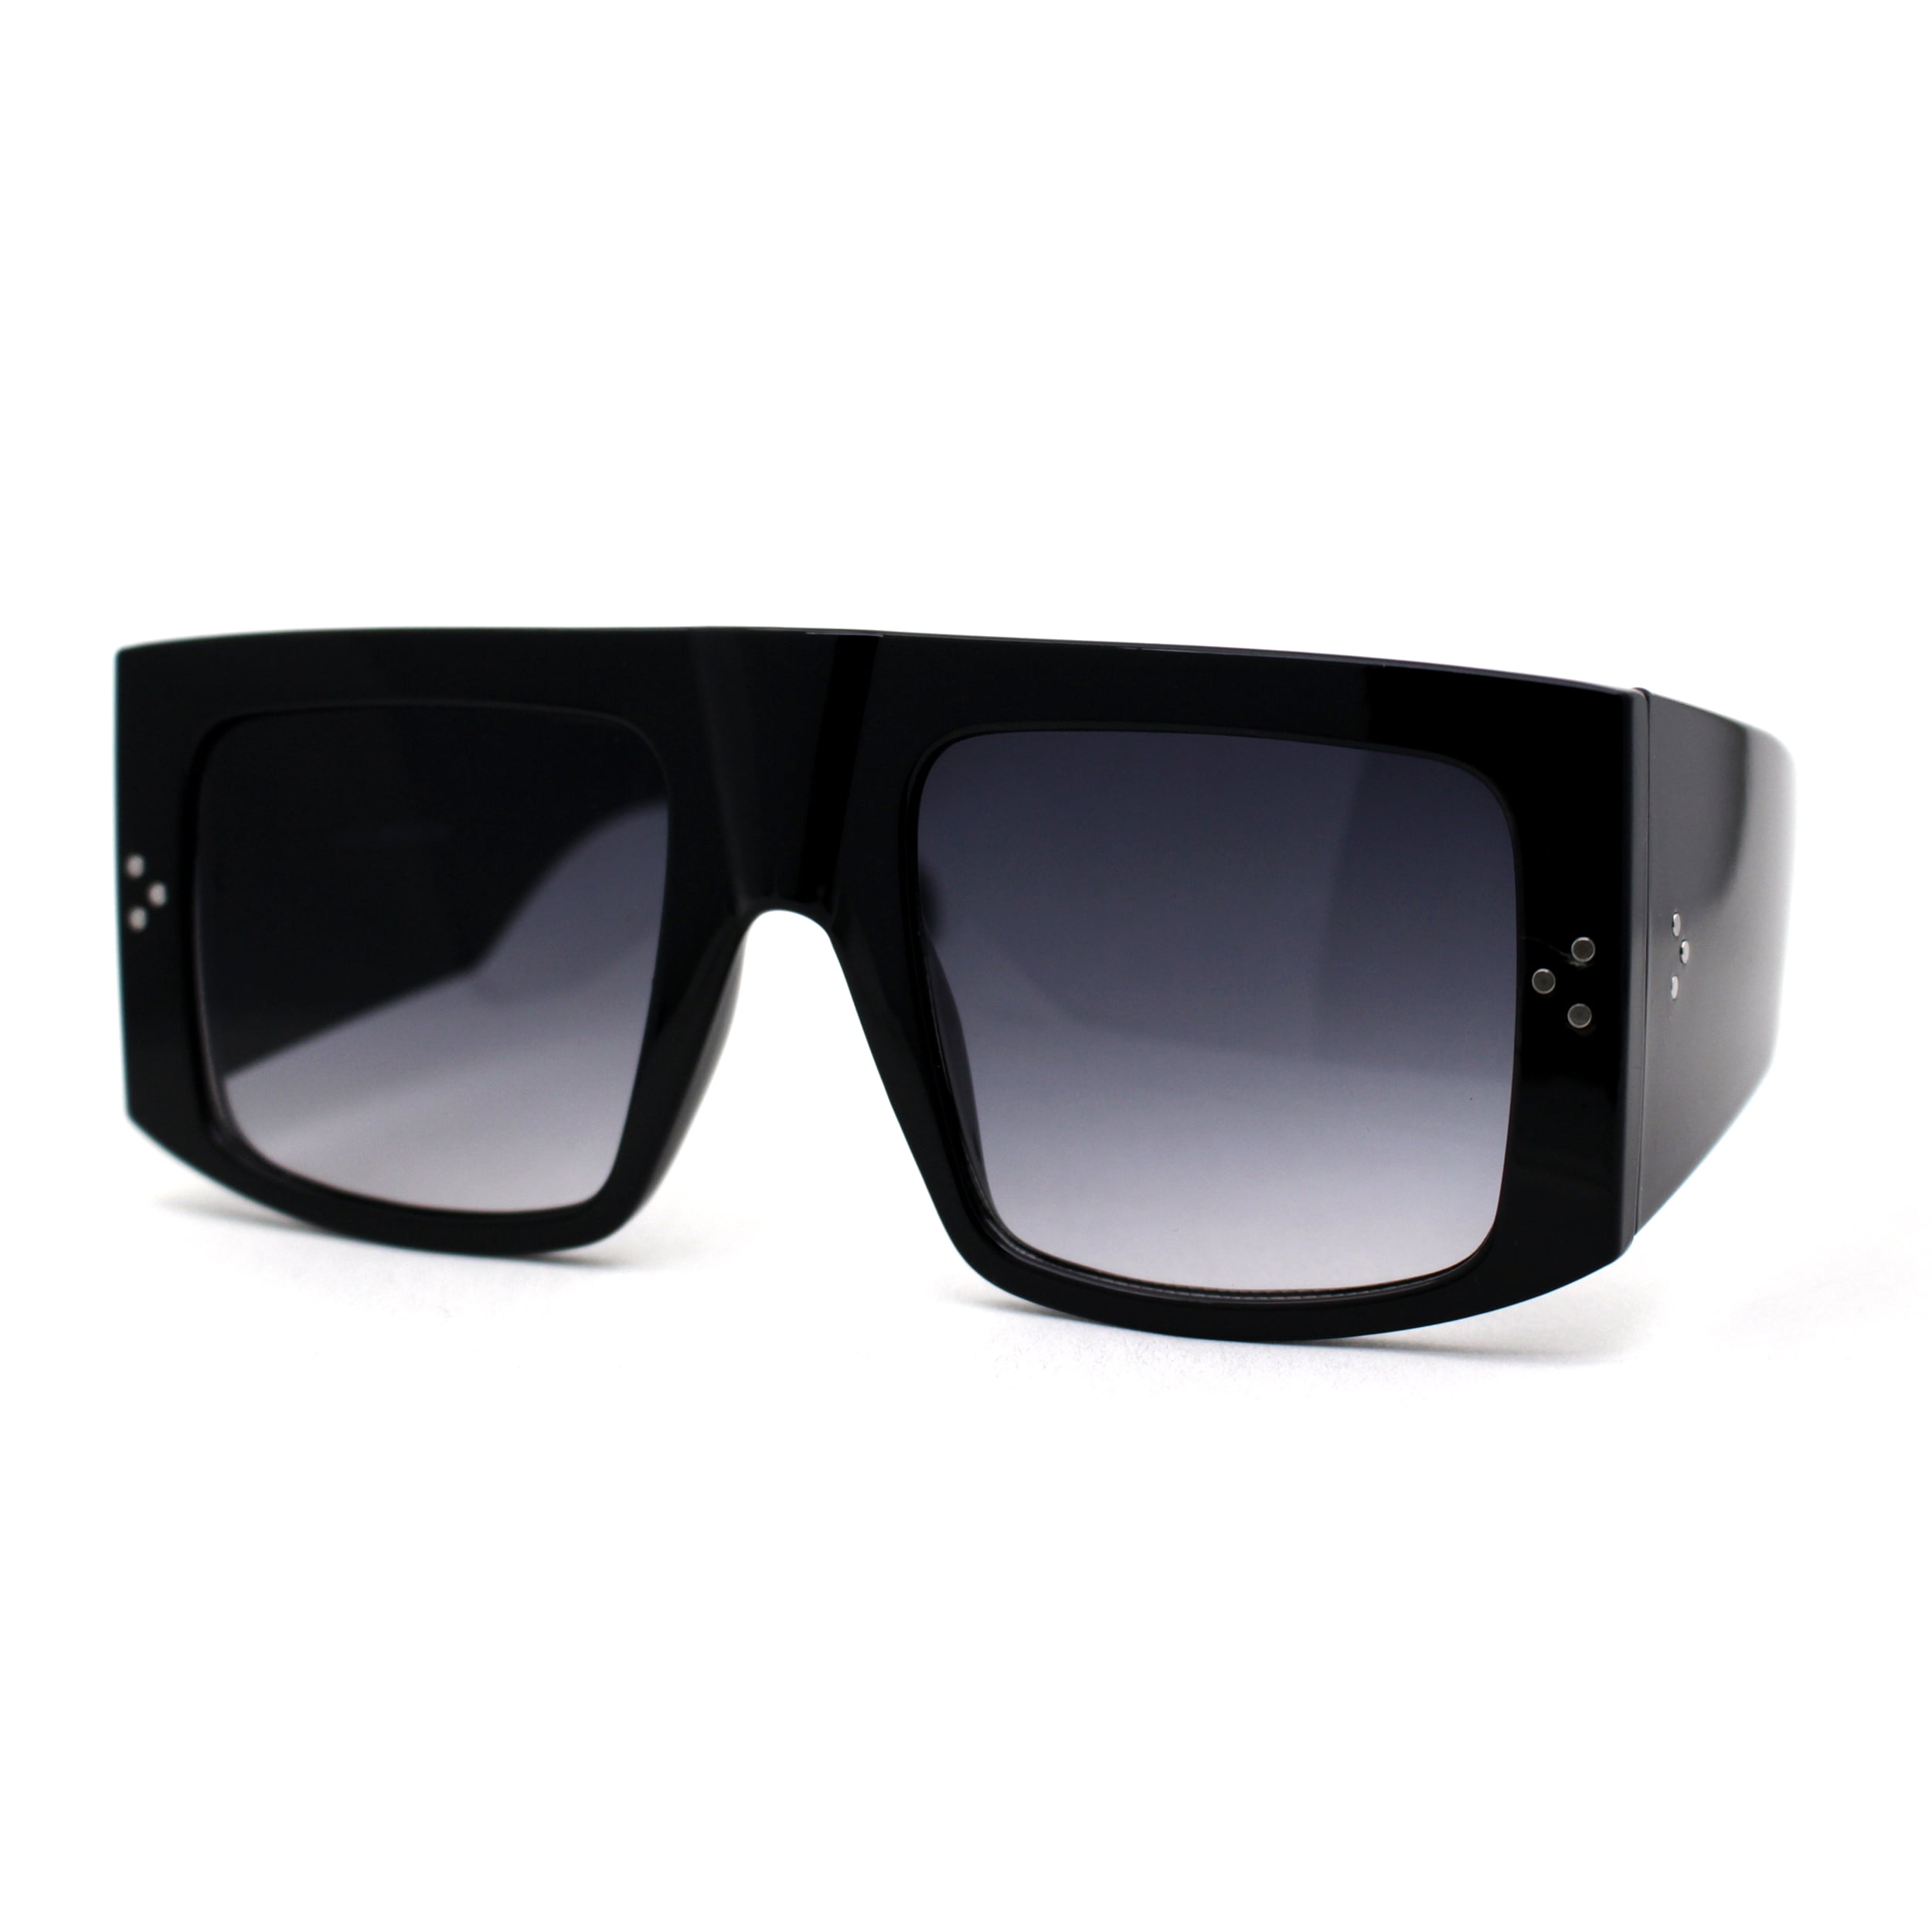 Lv blade square sunglasses. - Gem